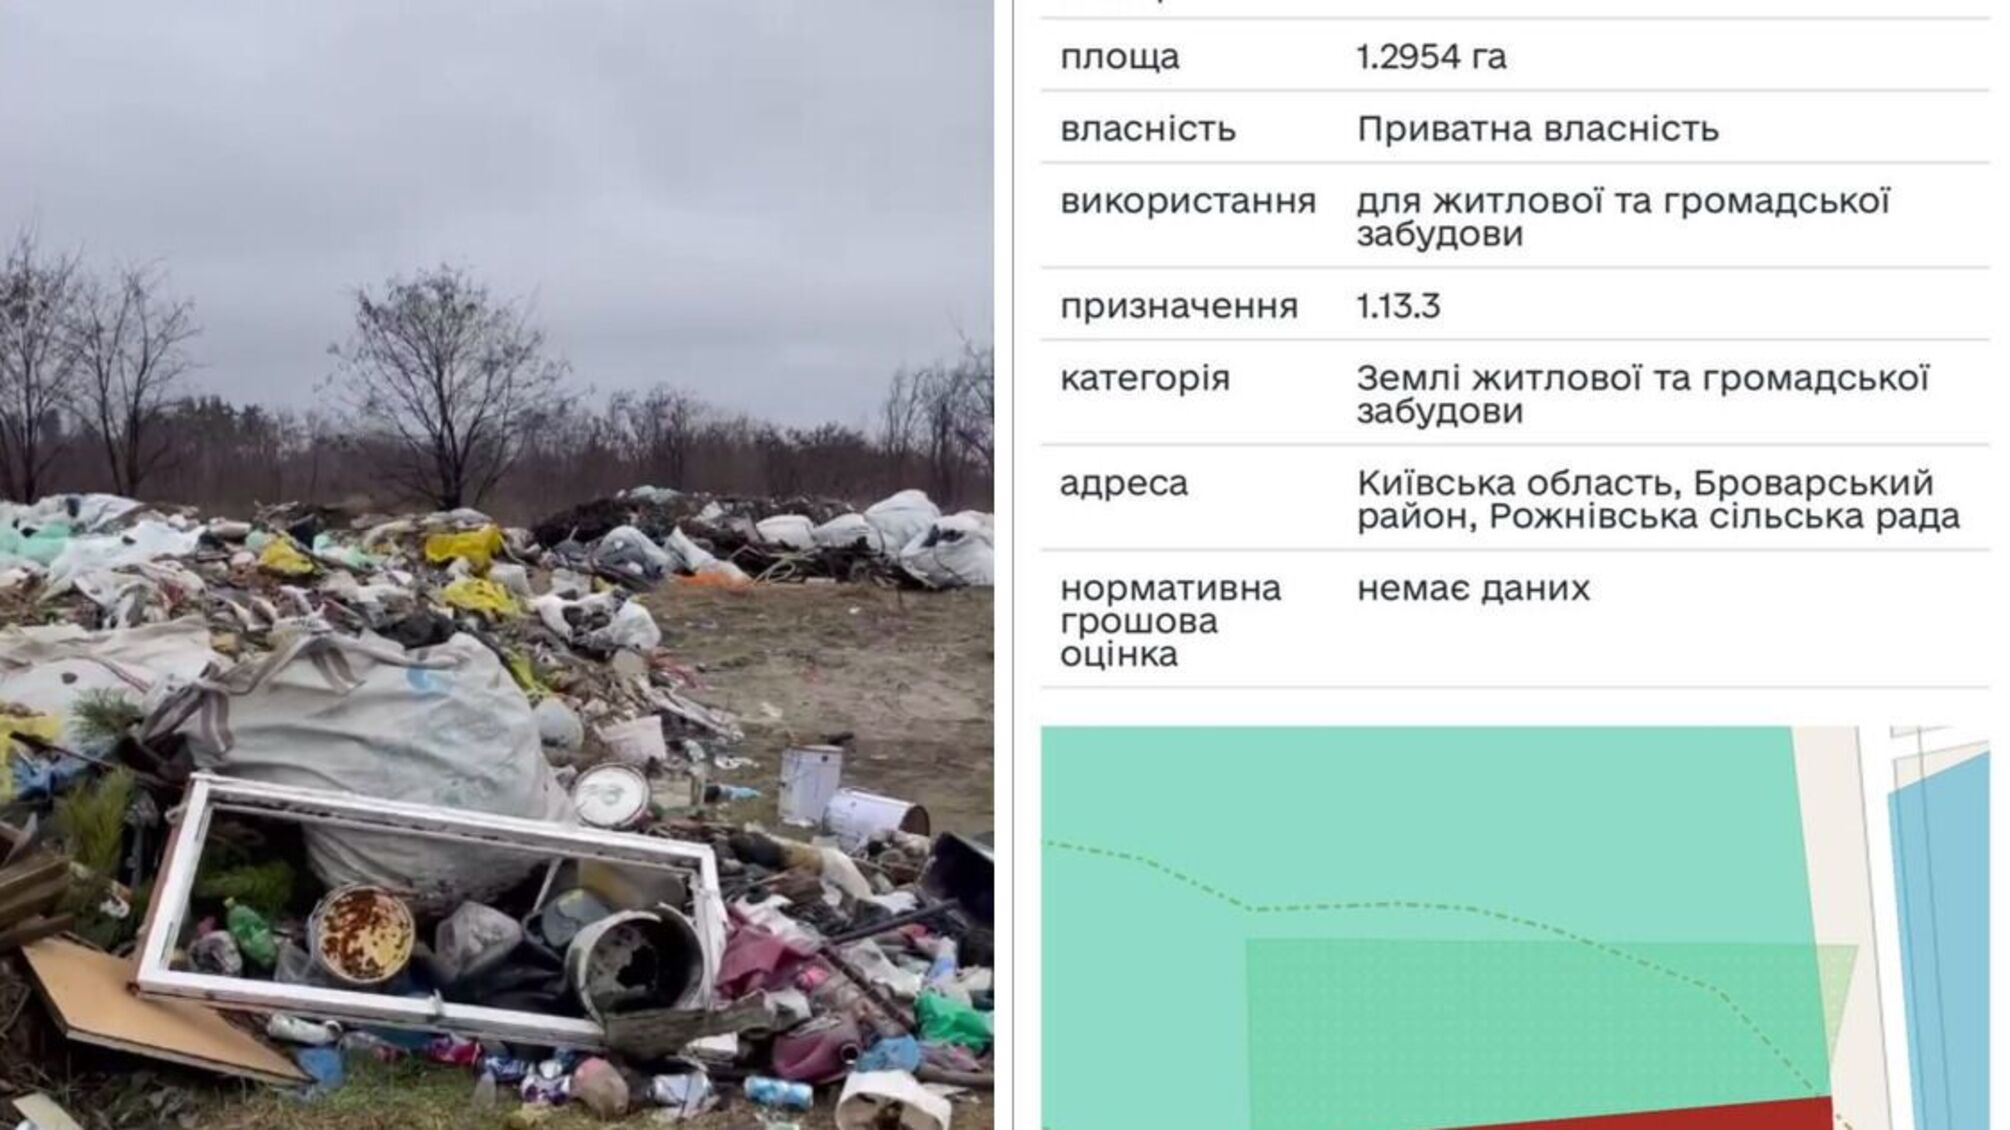 Журналисты СтопКор обнаружили помойку под Киевом, которую должны застроить